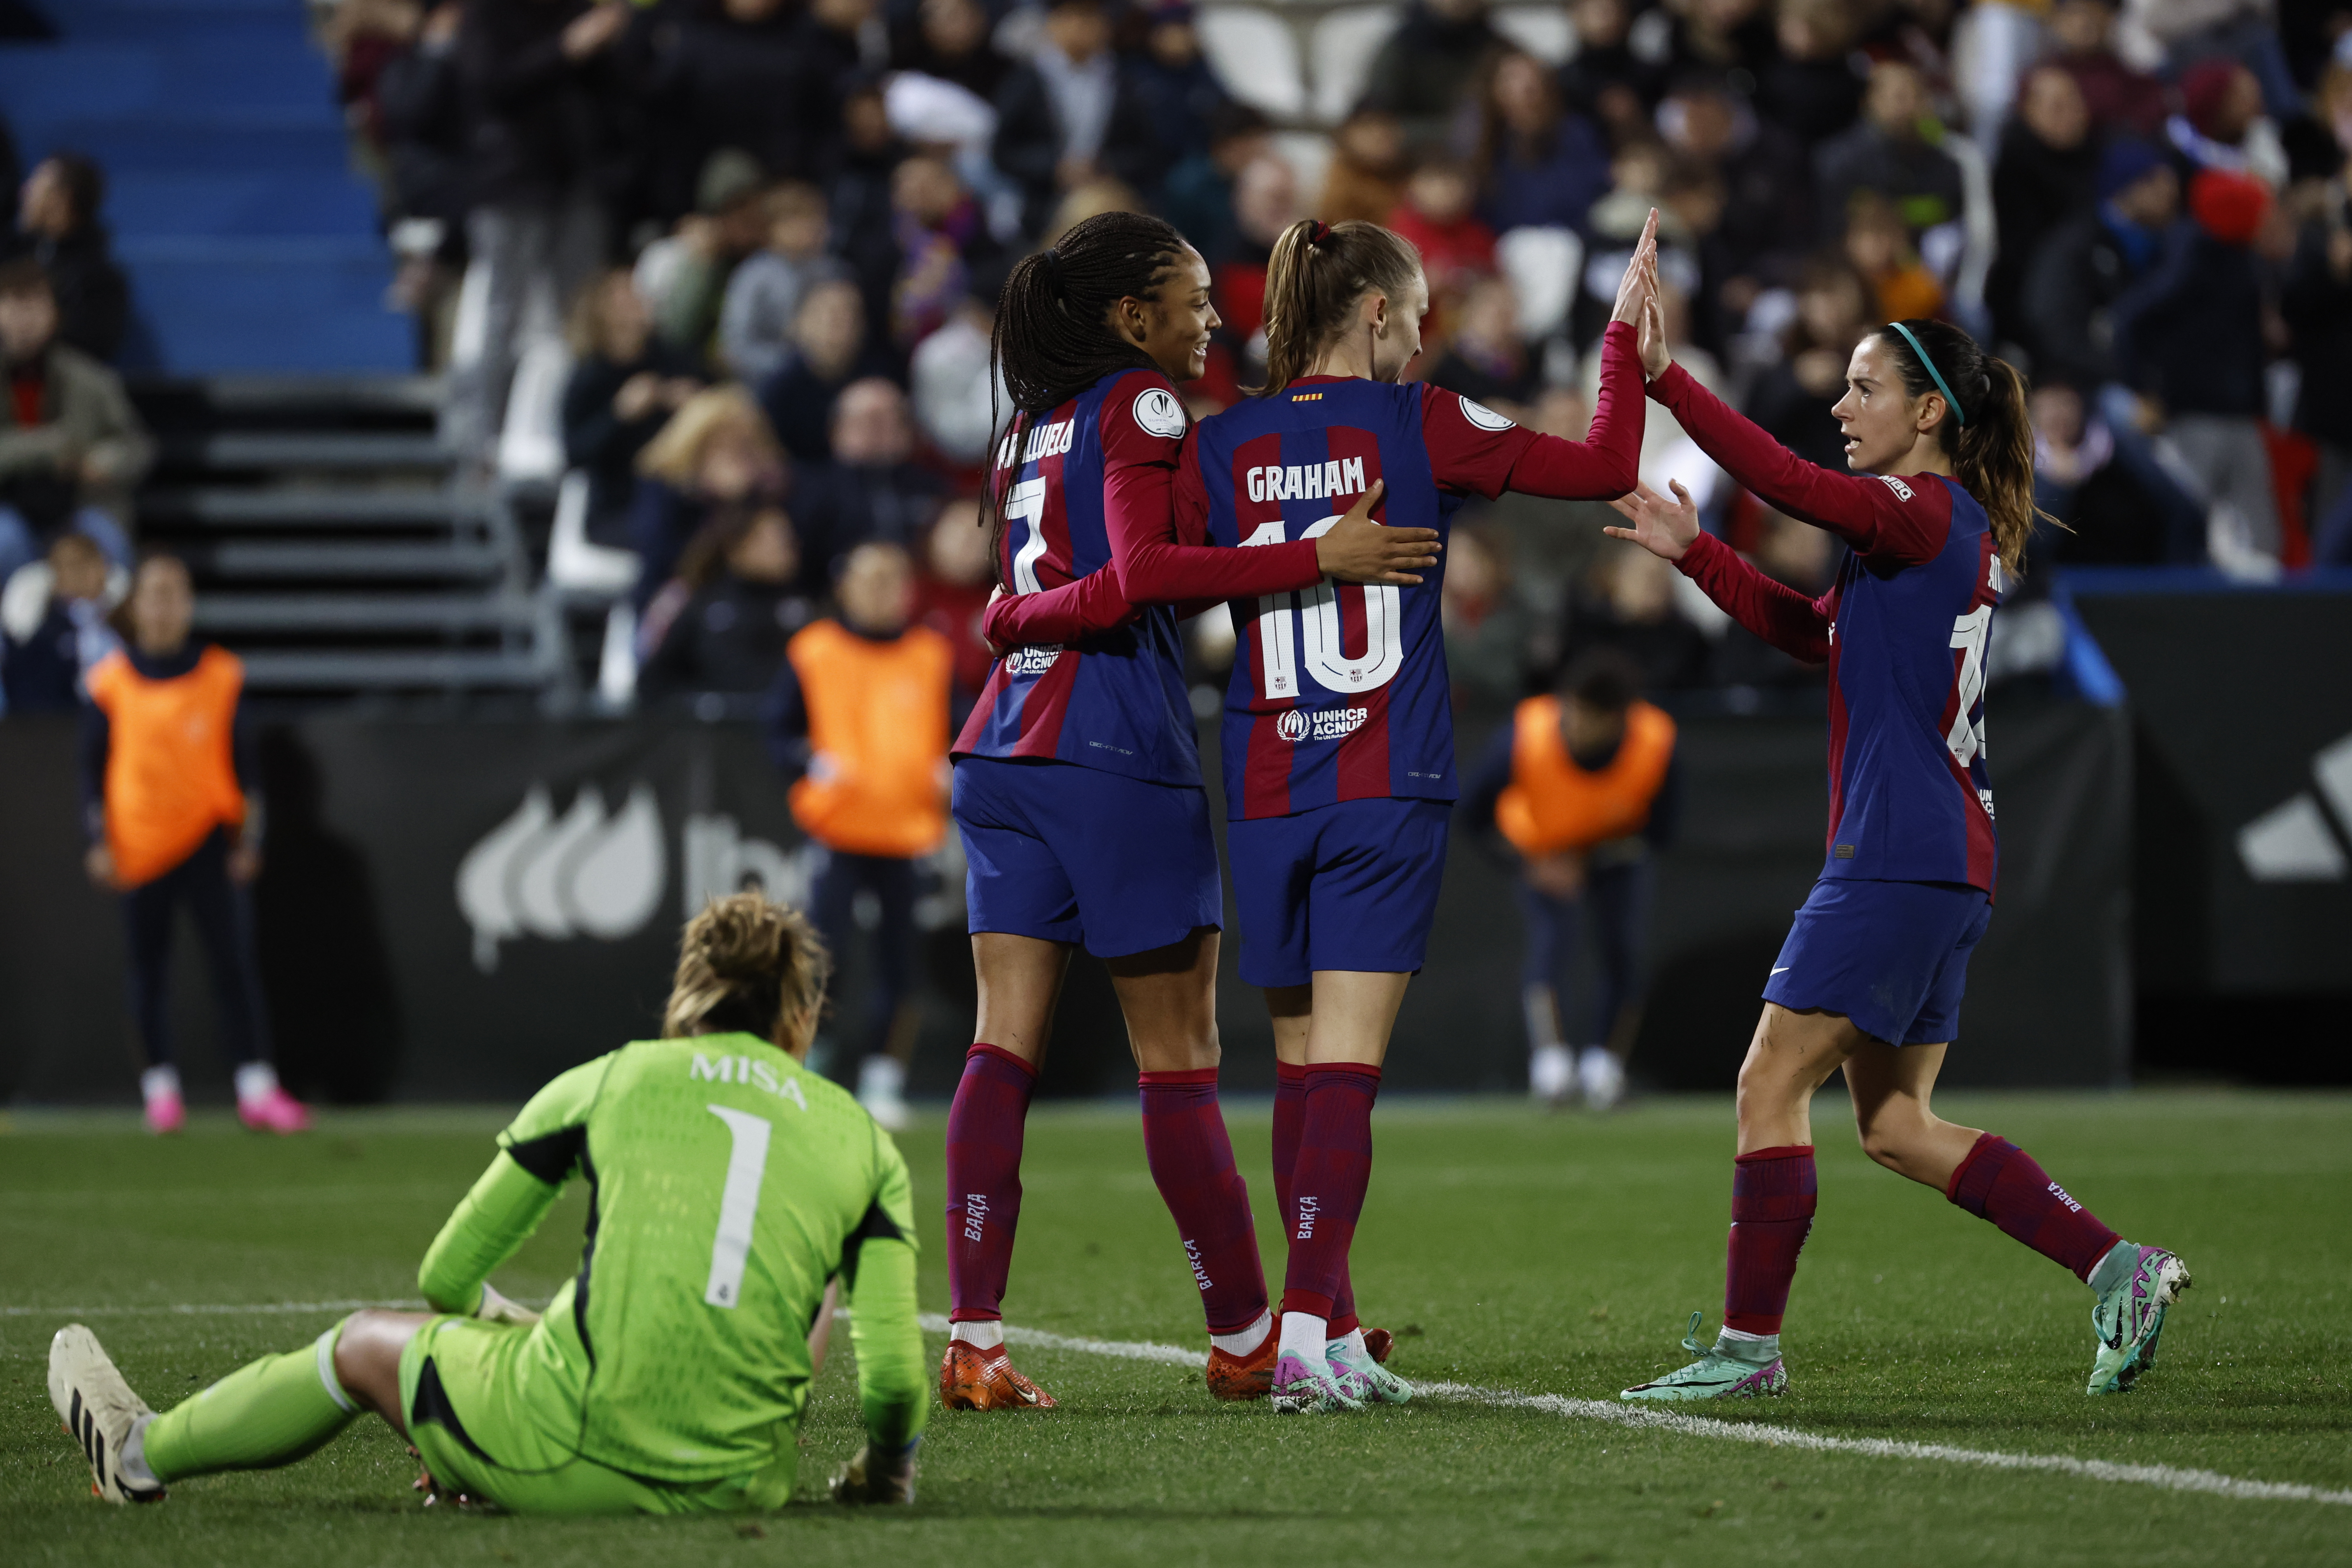 El Barça femení tampoc admet debat al Clàssic de Supercopa (4-0) i se cita amb el Llevant a la final